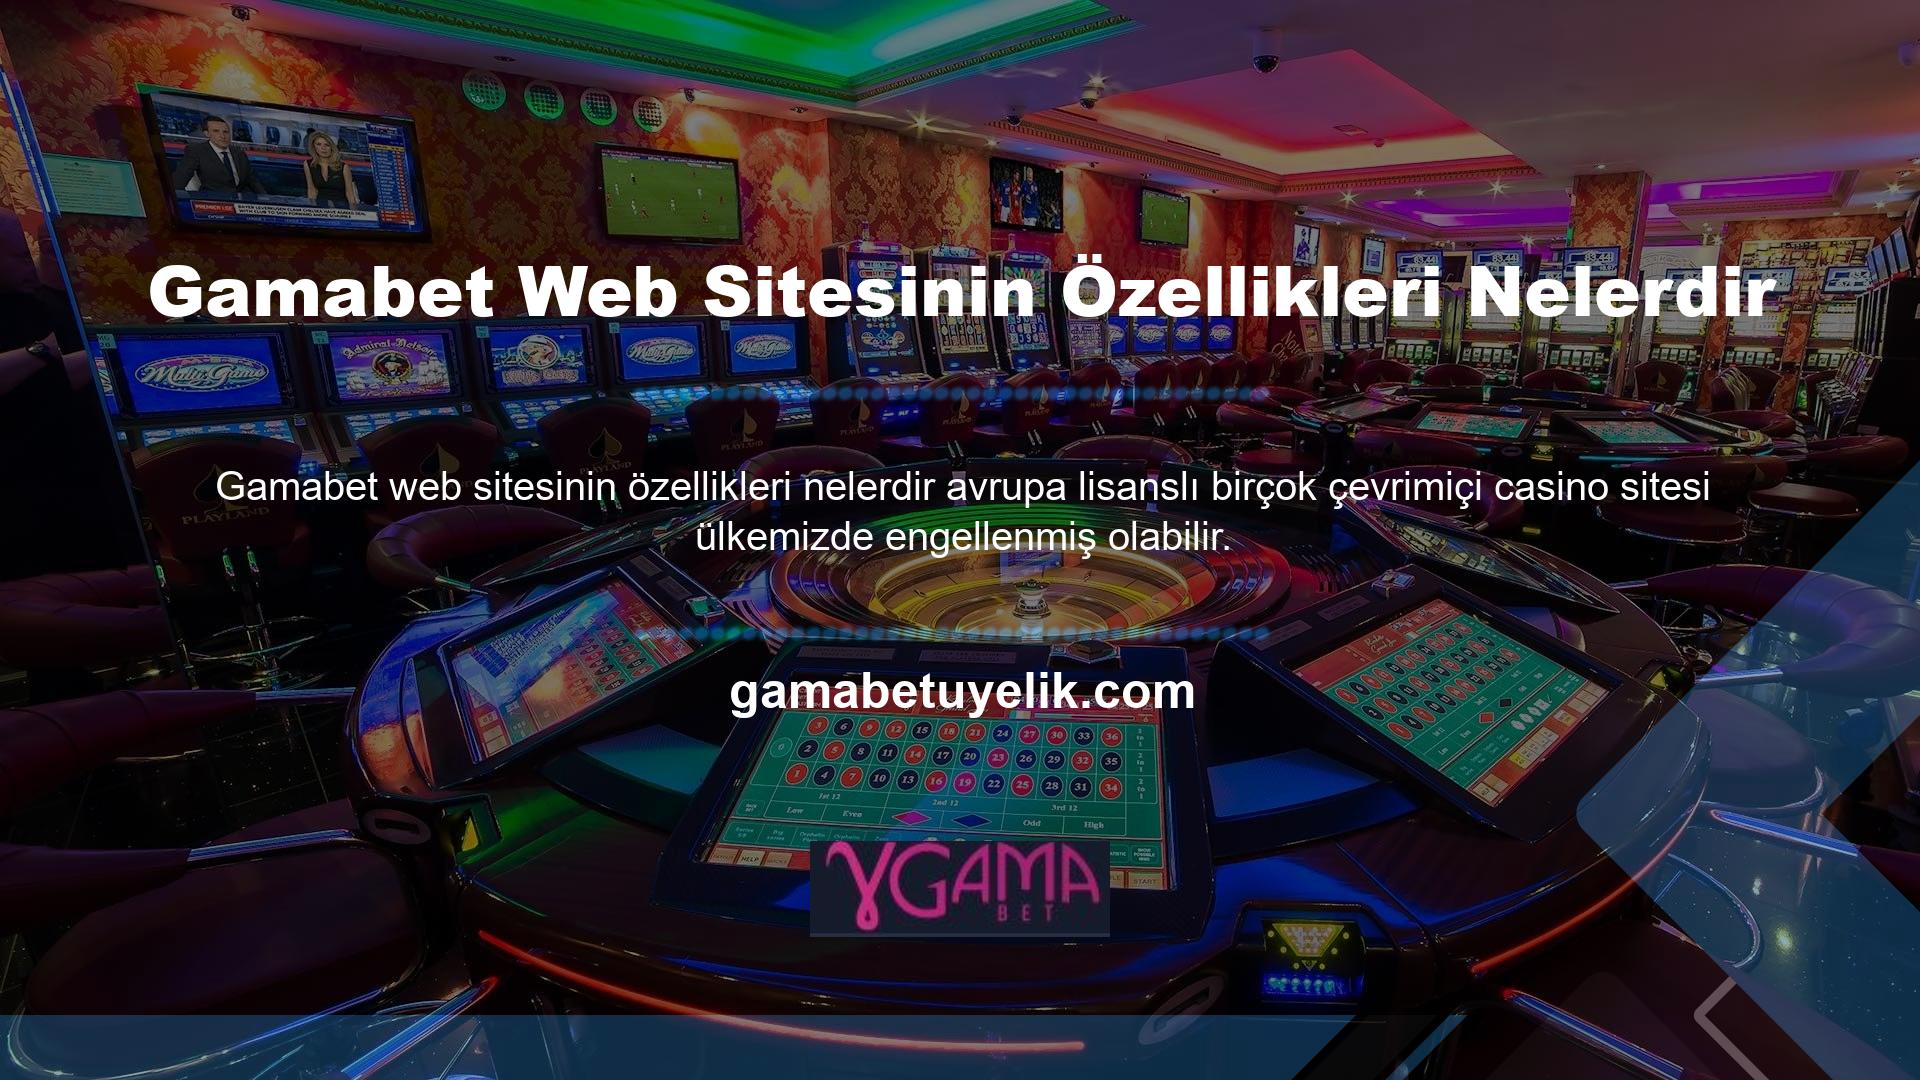 Diğer lisanslı Avrupa casino siteleri gibi Gamabet casino sitesi de alan adını değiştirerek bunu engellemektedir